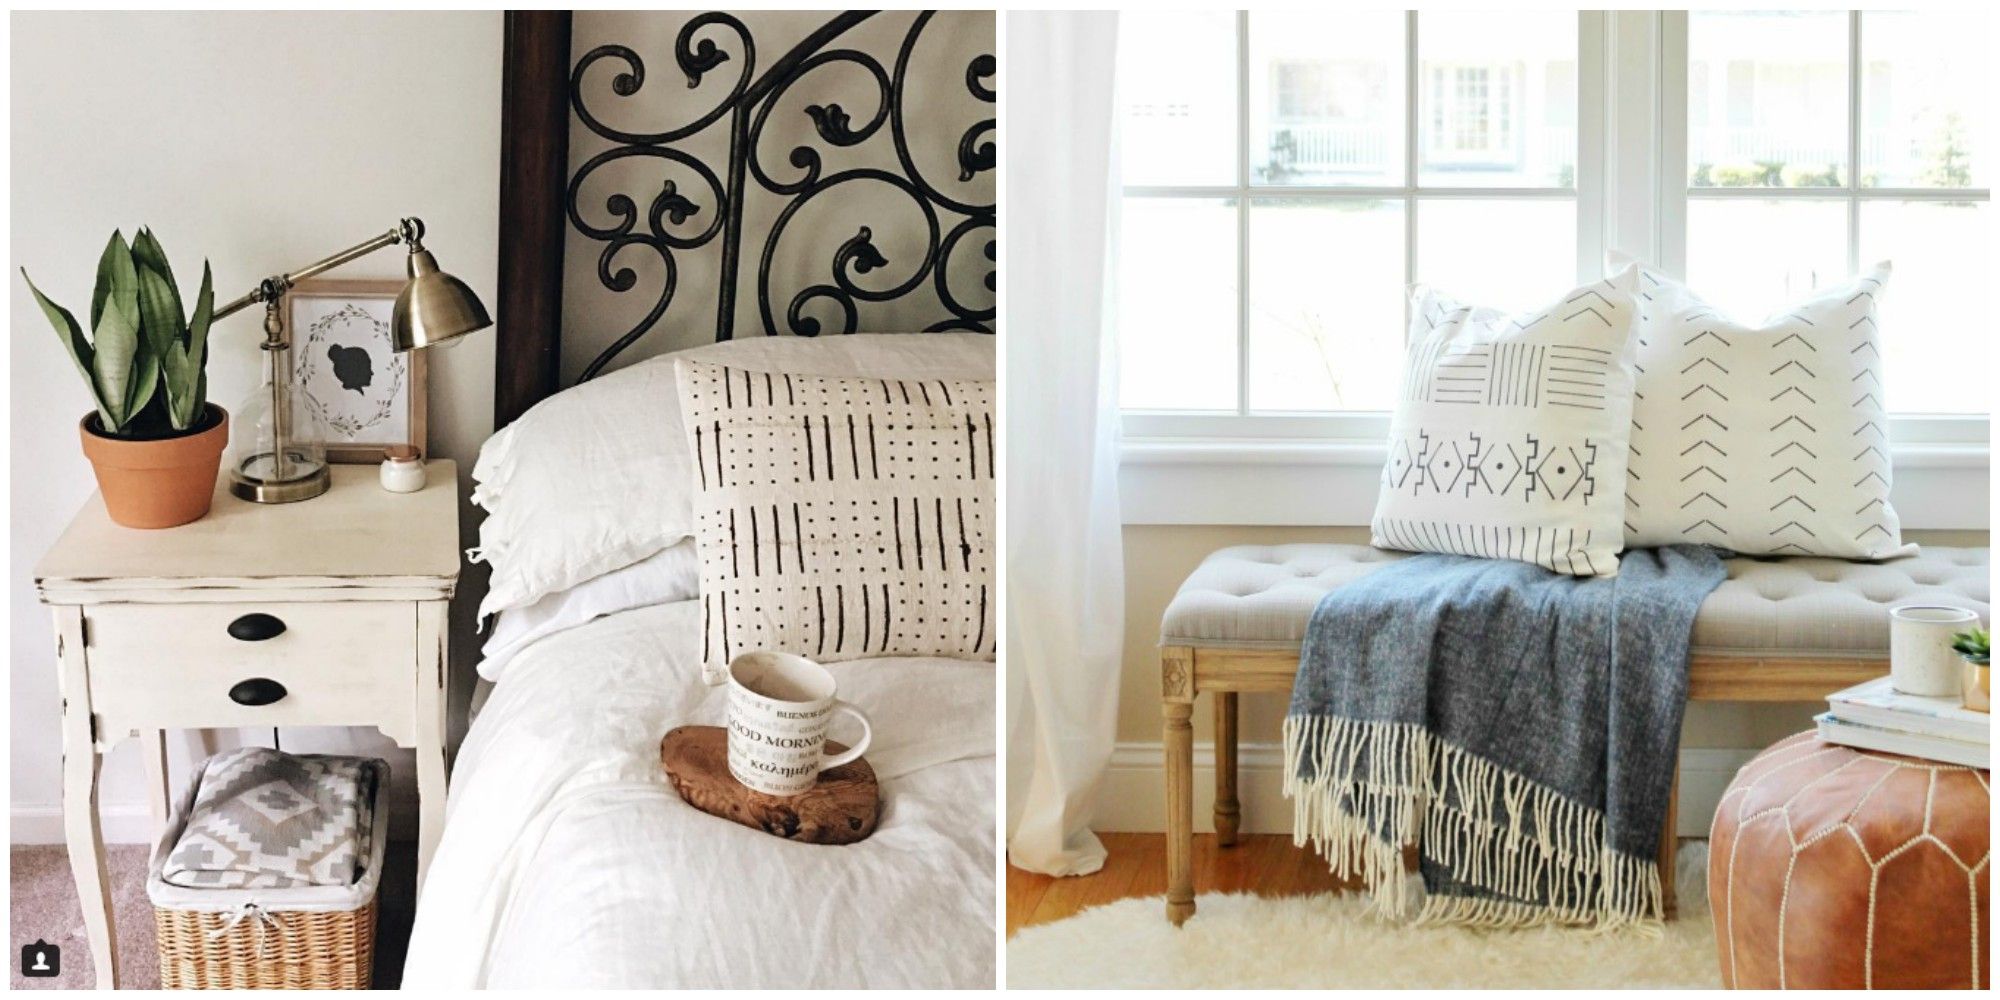 Lumbar Pillow Trend - Lumbar Pillow Bedroom Trend